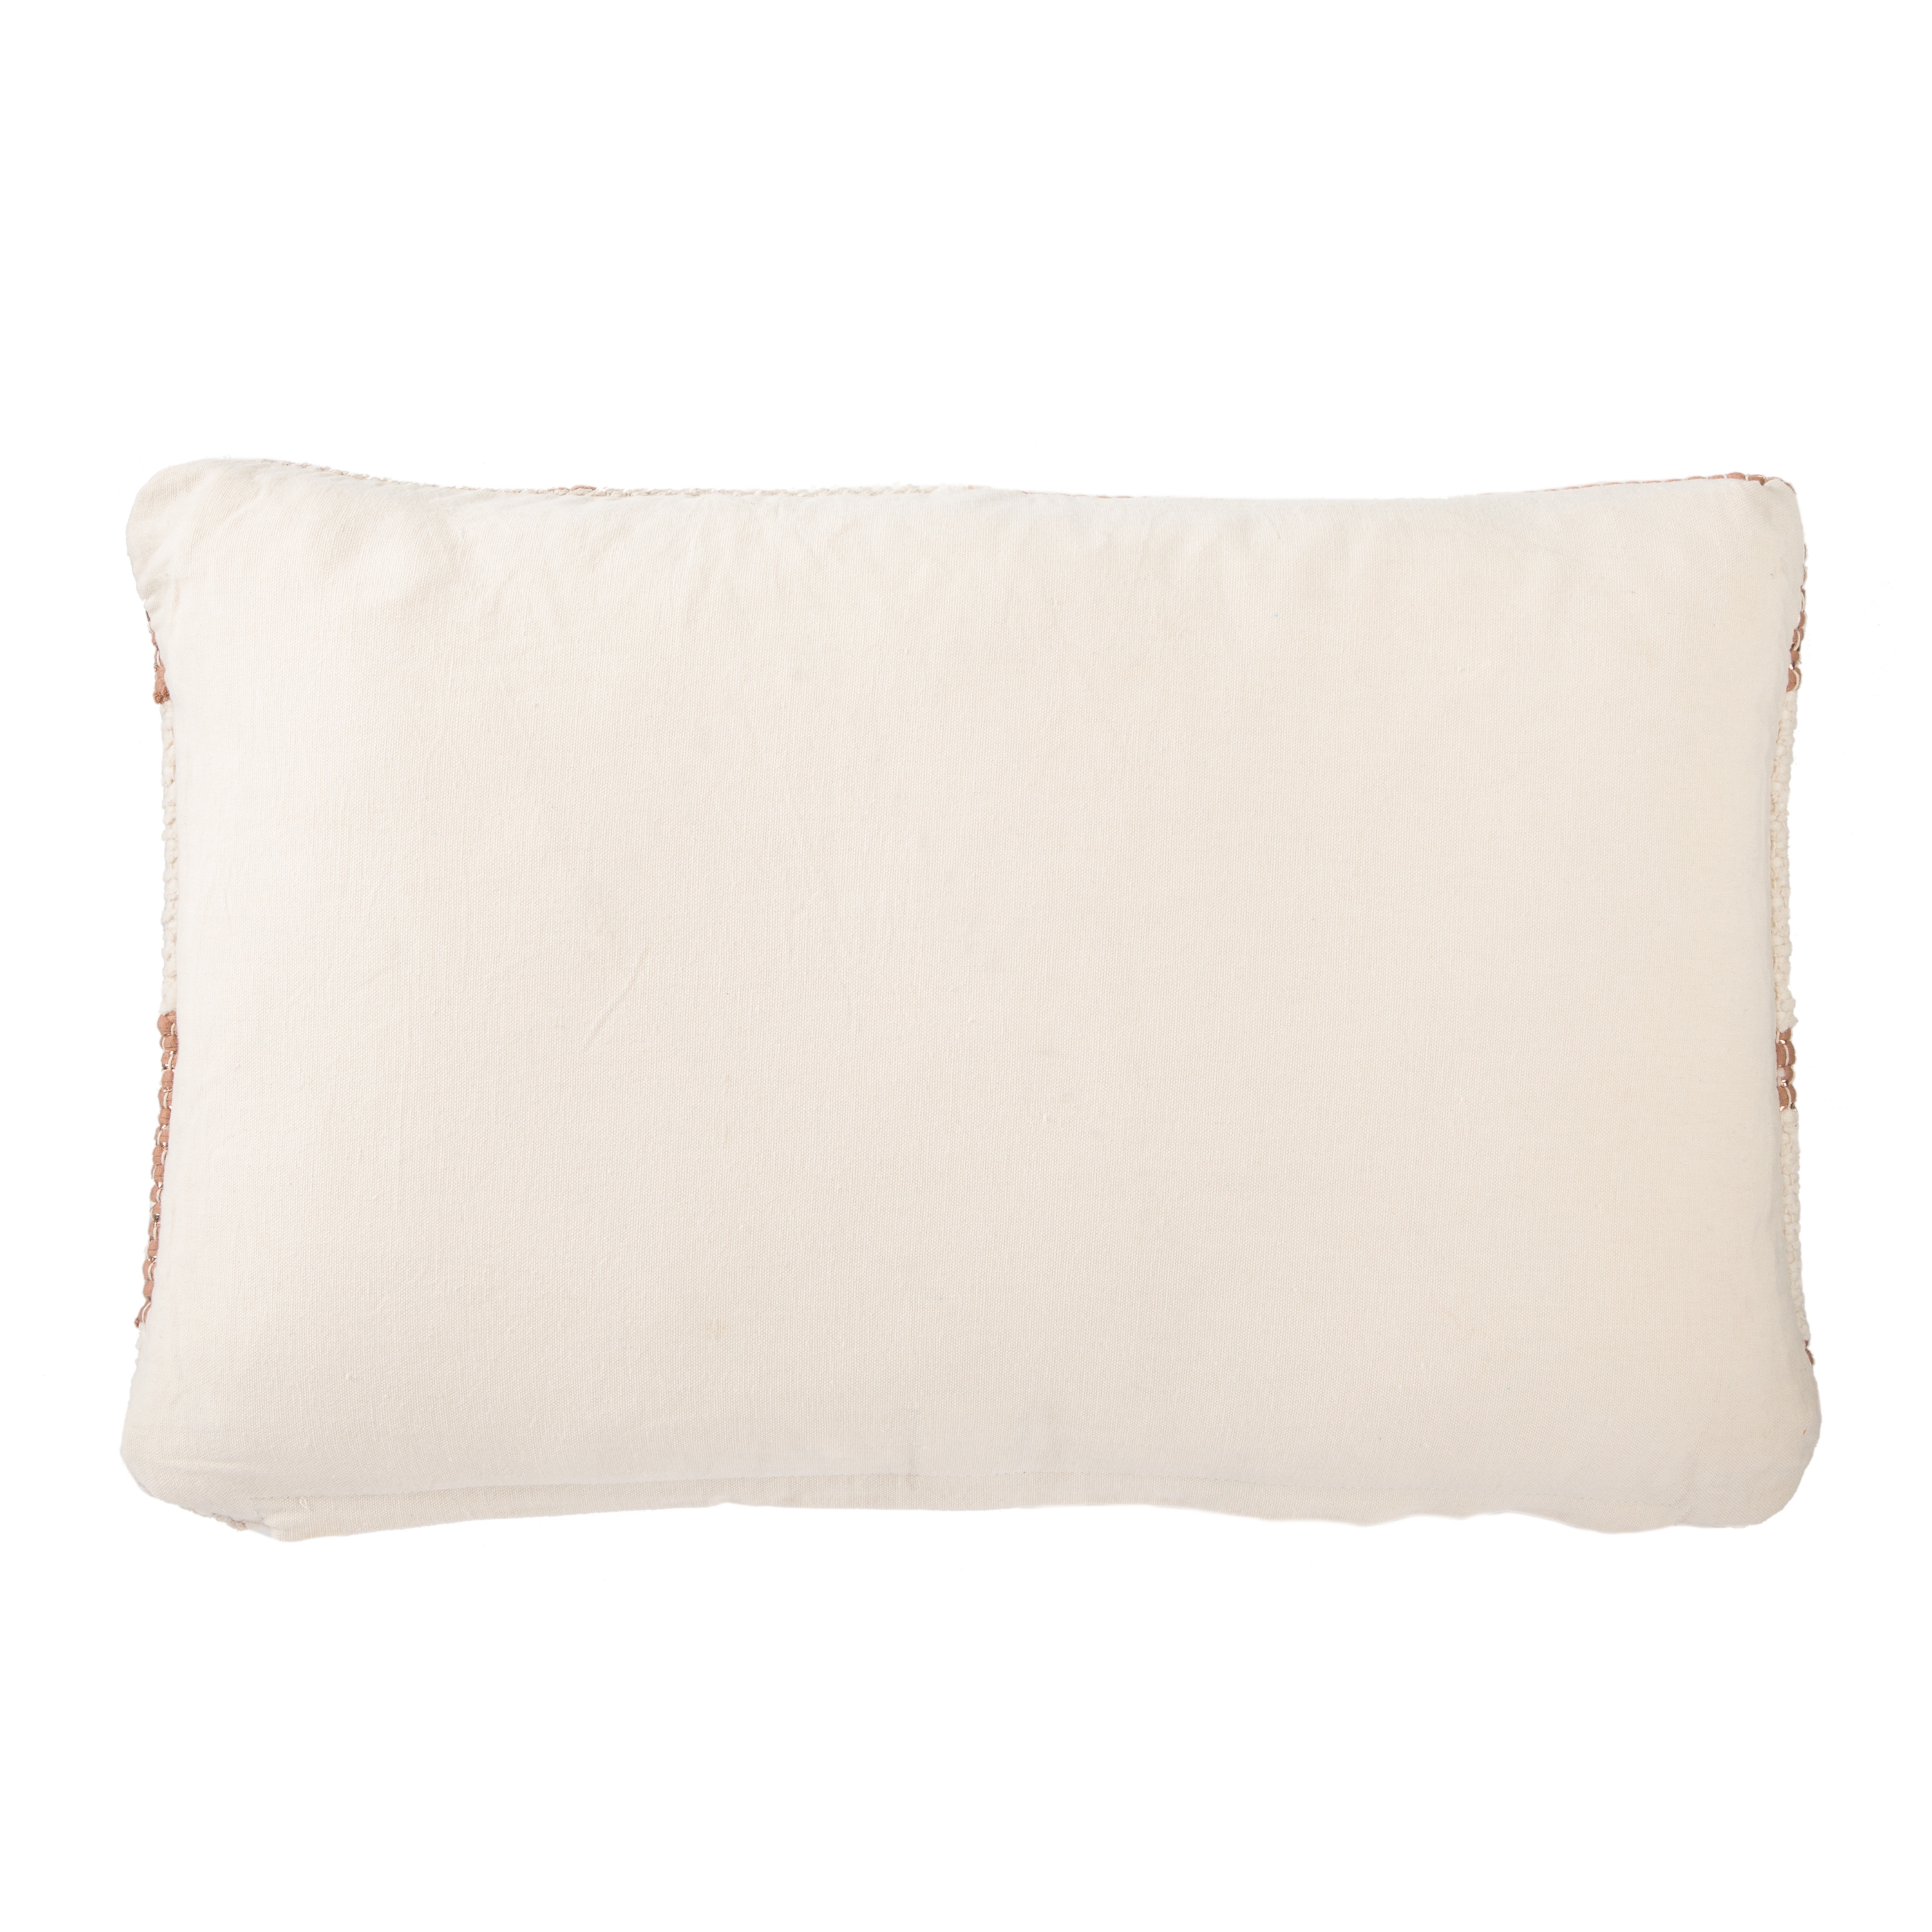 Design (US) Cream 16"X24" Pillow - Image 1